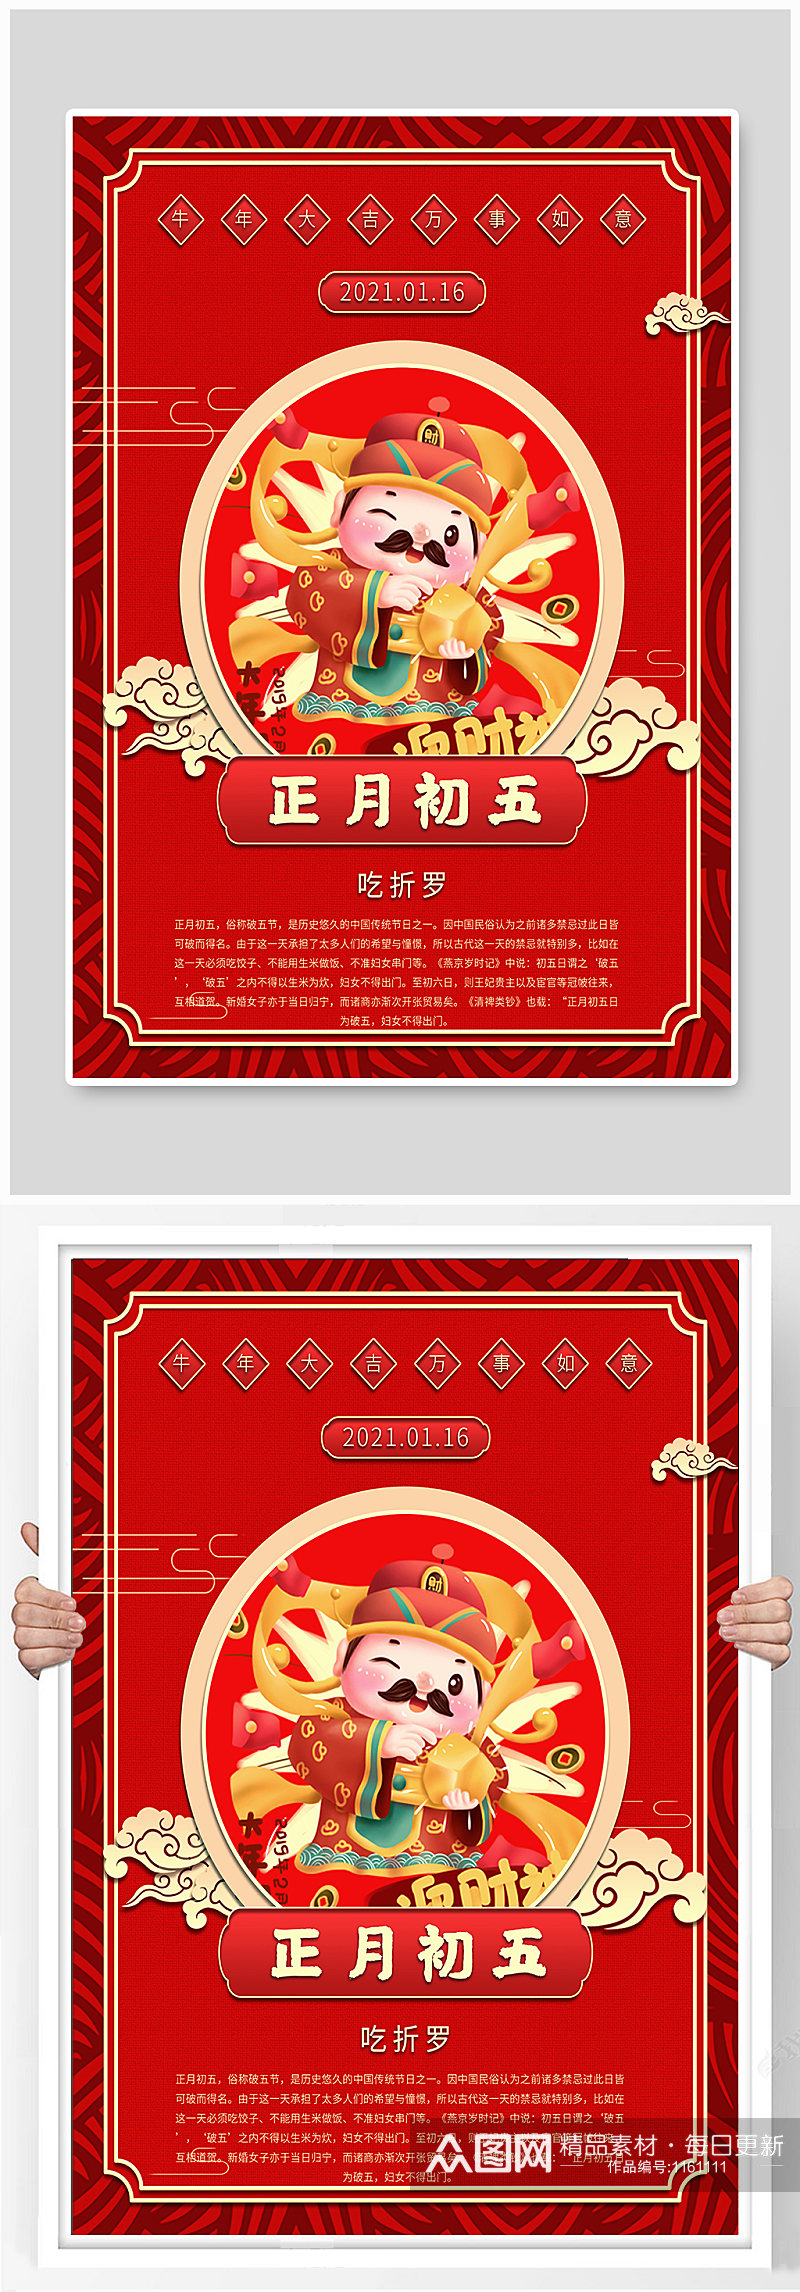 红色板式喜庆大年初五节日海报素材